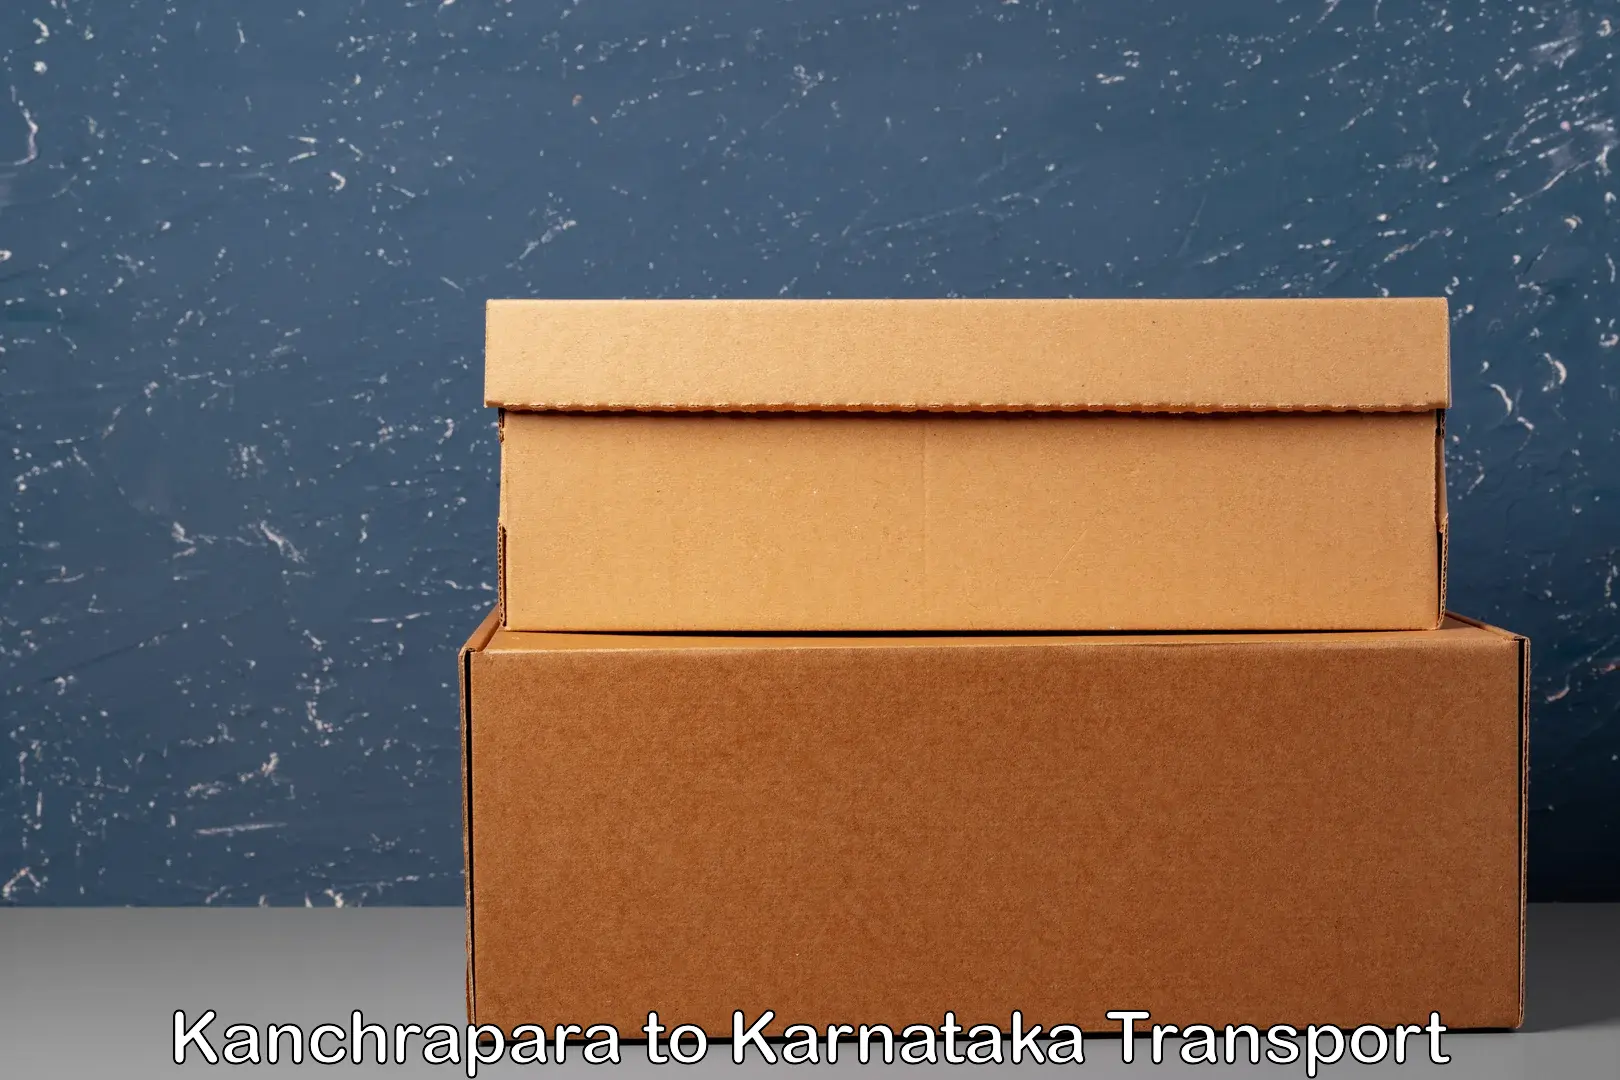 Scooty transport charges Kanchrapara to Karnataka